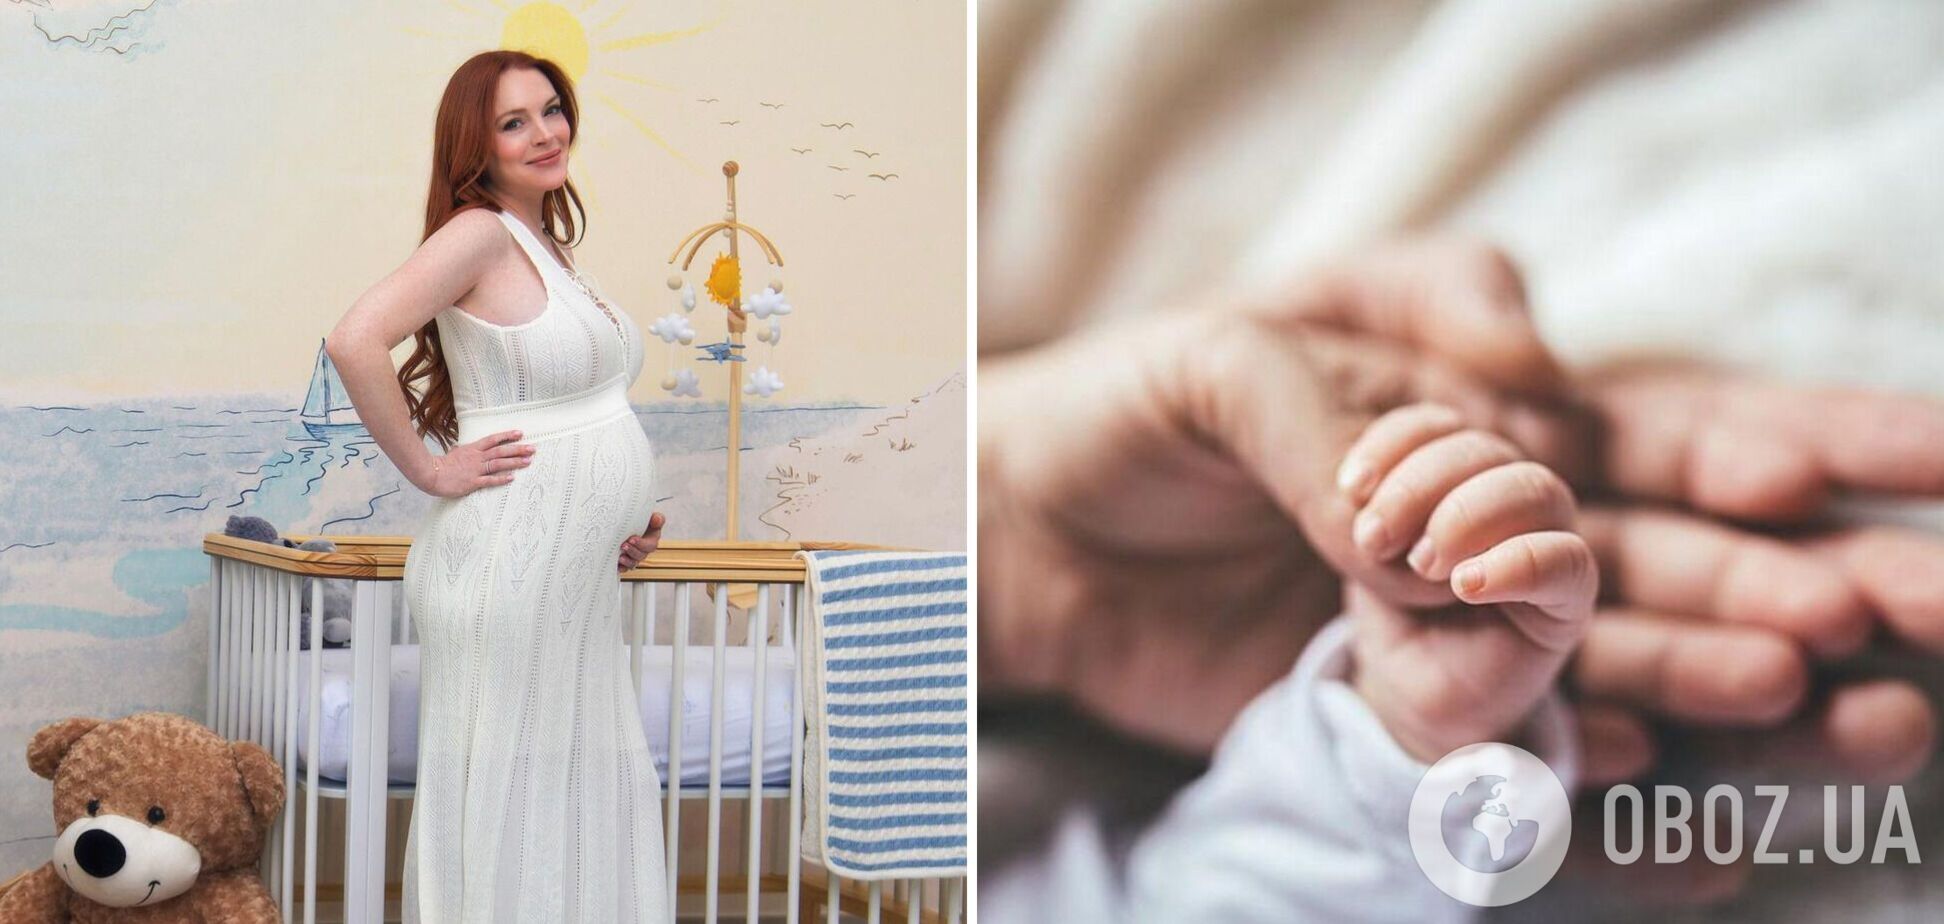 37-летняя Линдси Лохан впервые стала мамой: первенцу дали необычное имя